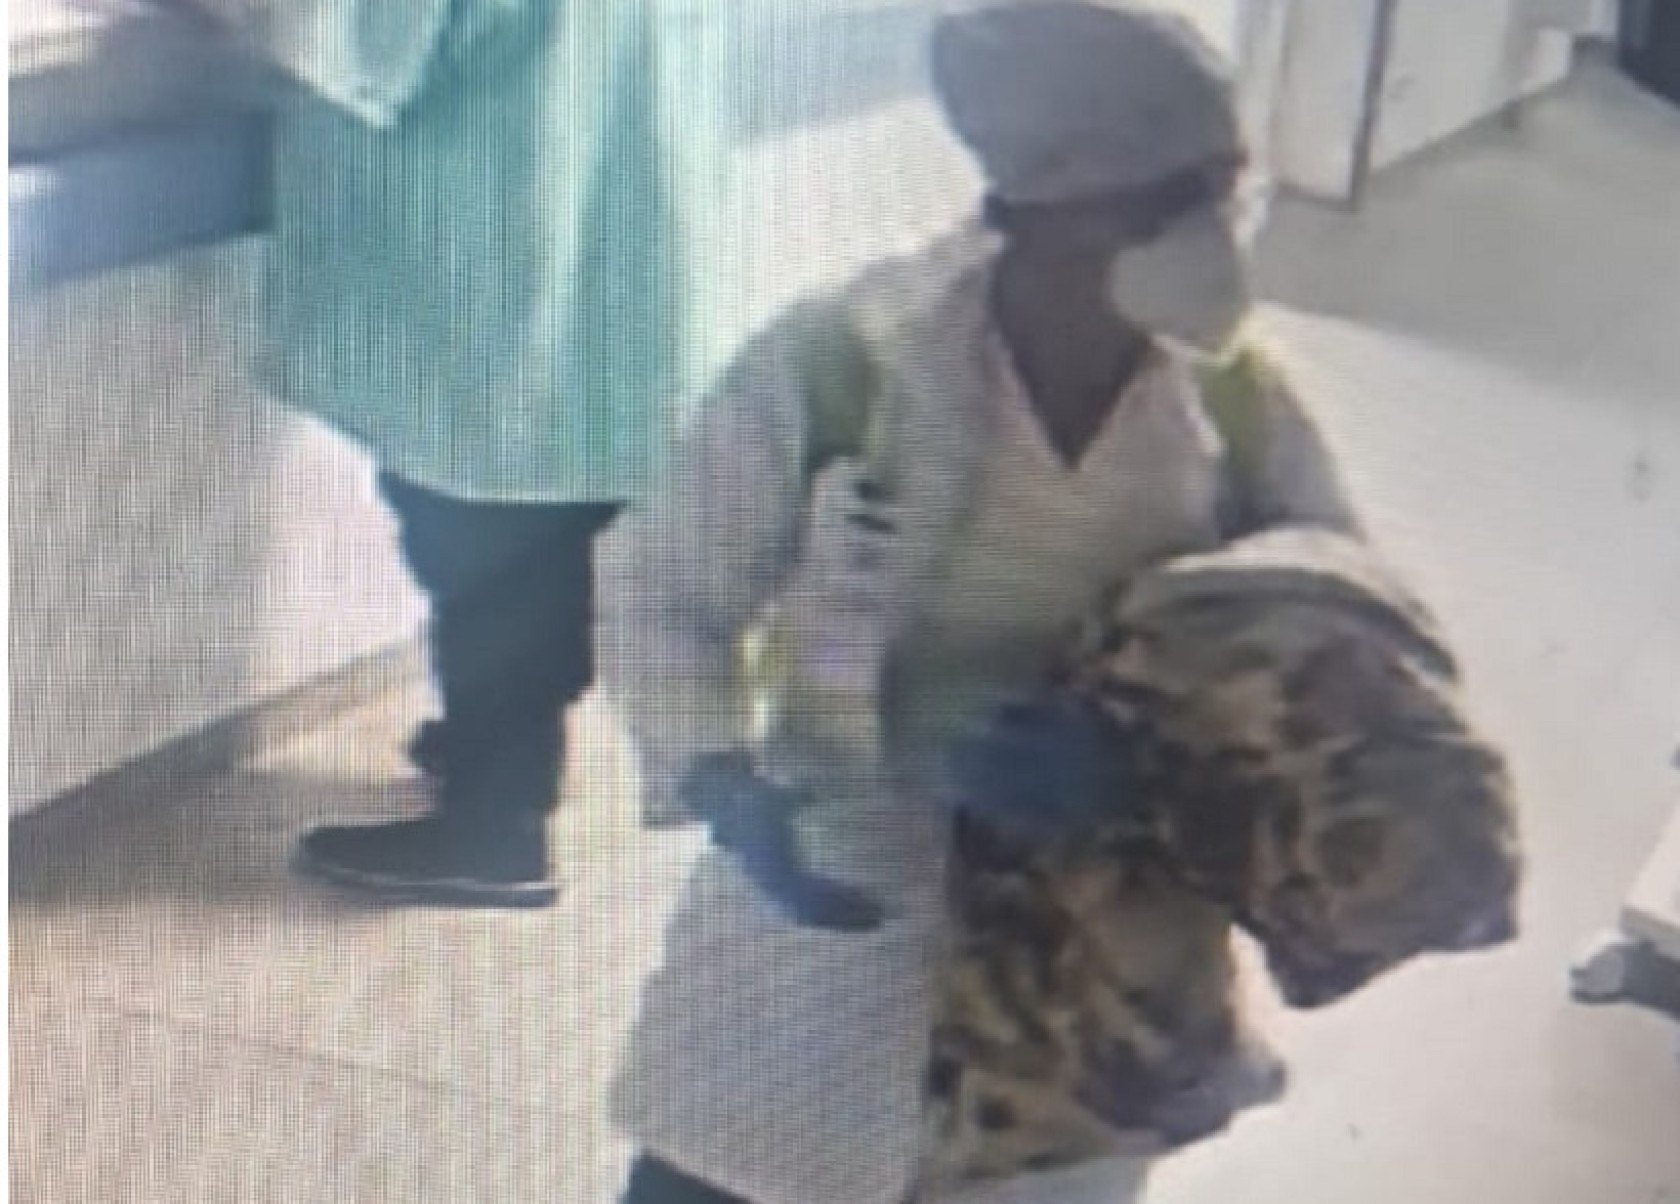 Mulher finge de médica e sequestra bebê em hospital